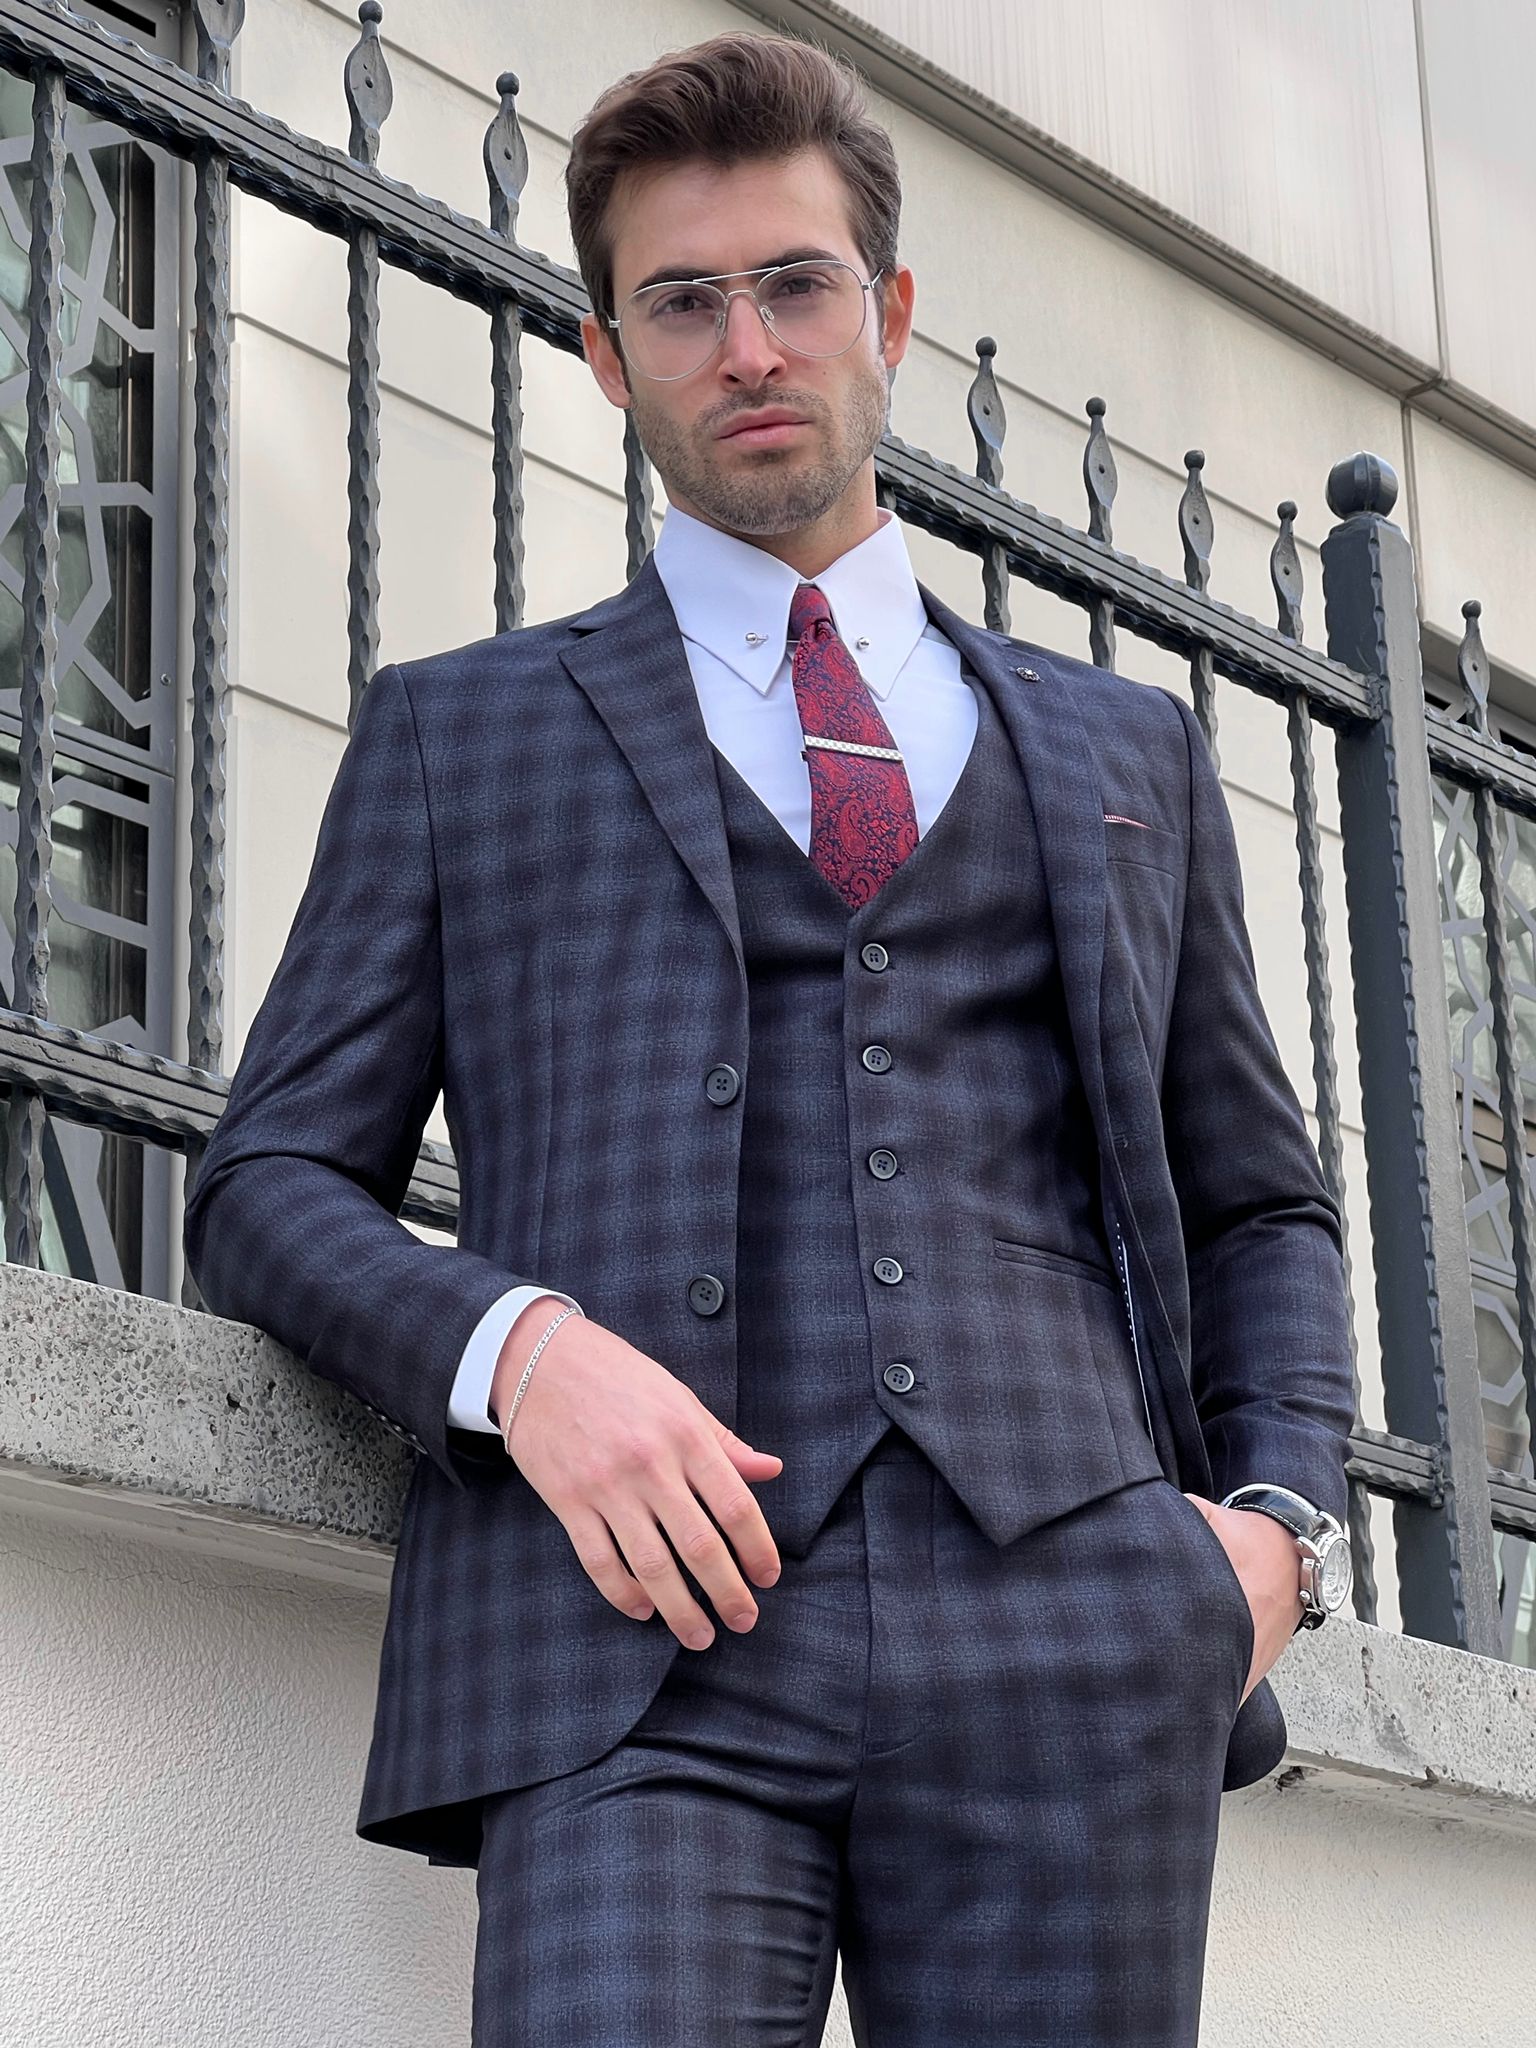 Louis Slim Fit Black & Navy Business Plaid Suit – MCR TAILOR